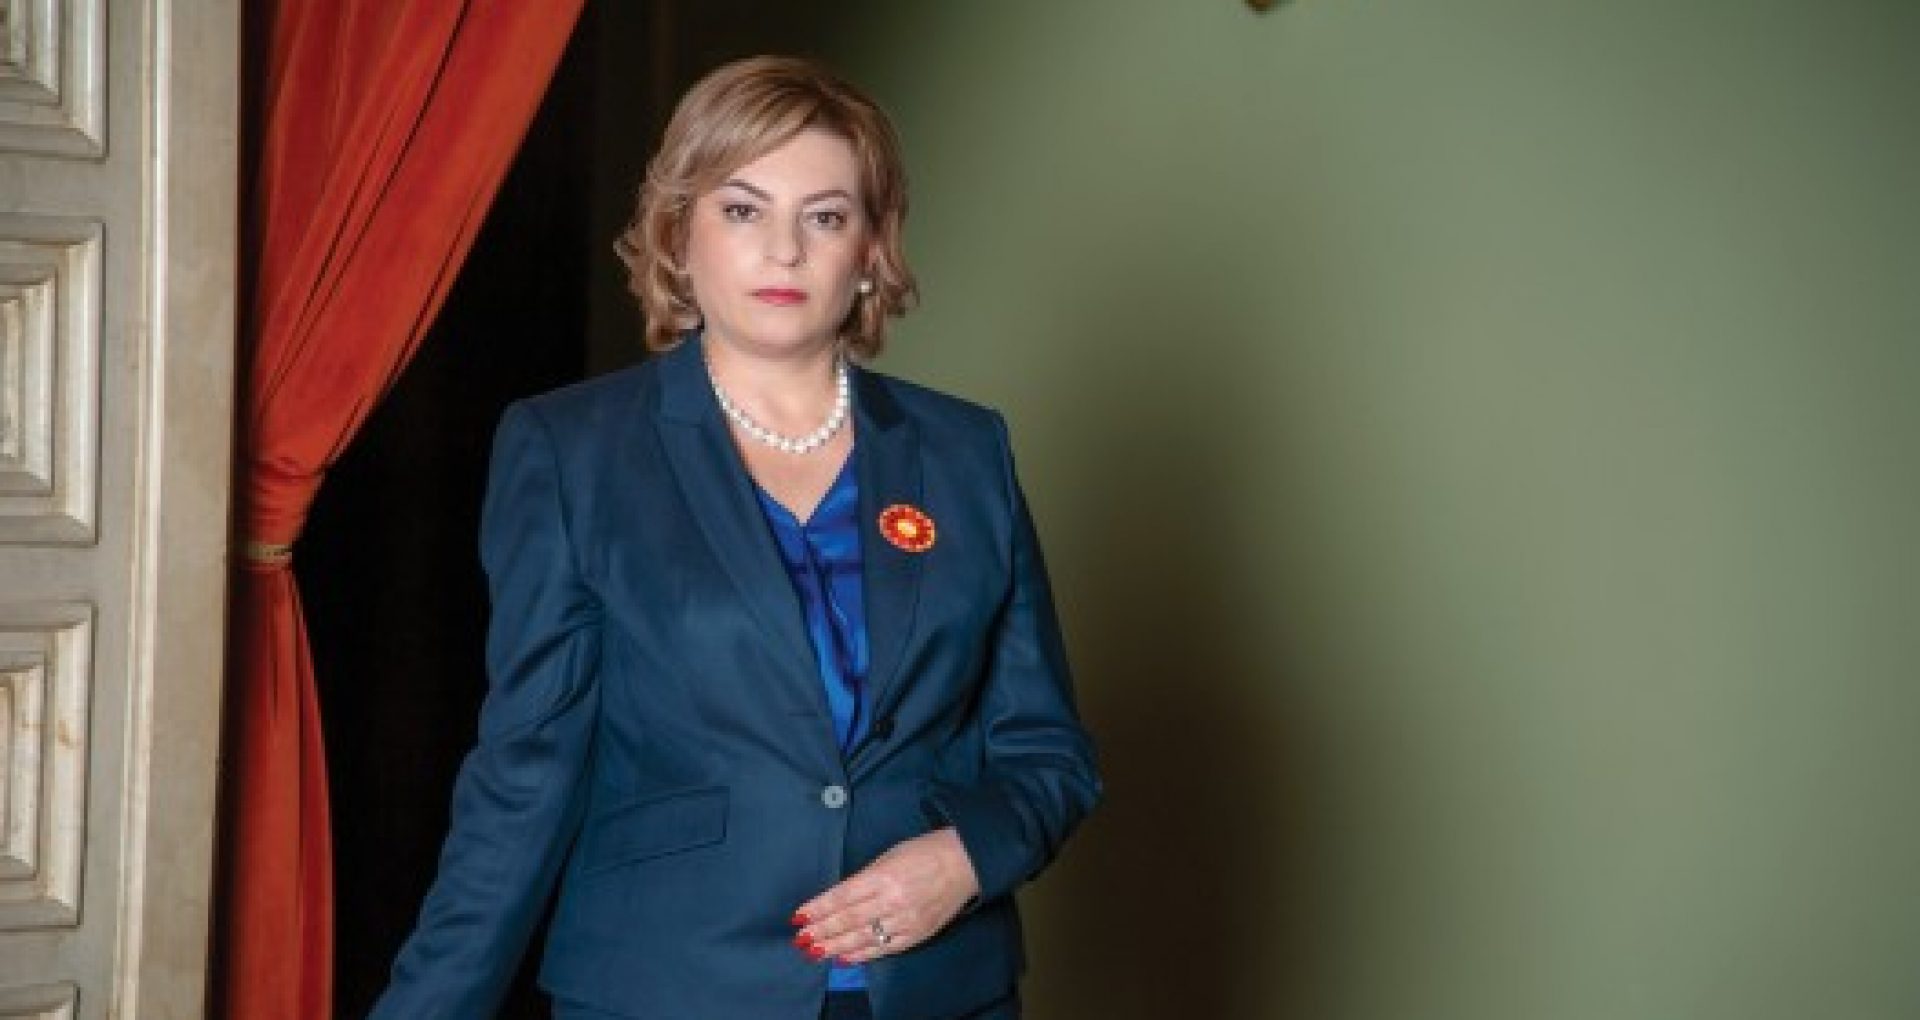 CV-ul Marianei Durleșteanu, candidata PSRM la funcția de premier. A fost ministră în Guvernul Greceanîi și ambasadoare în Regatul Unit